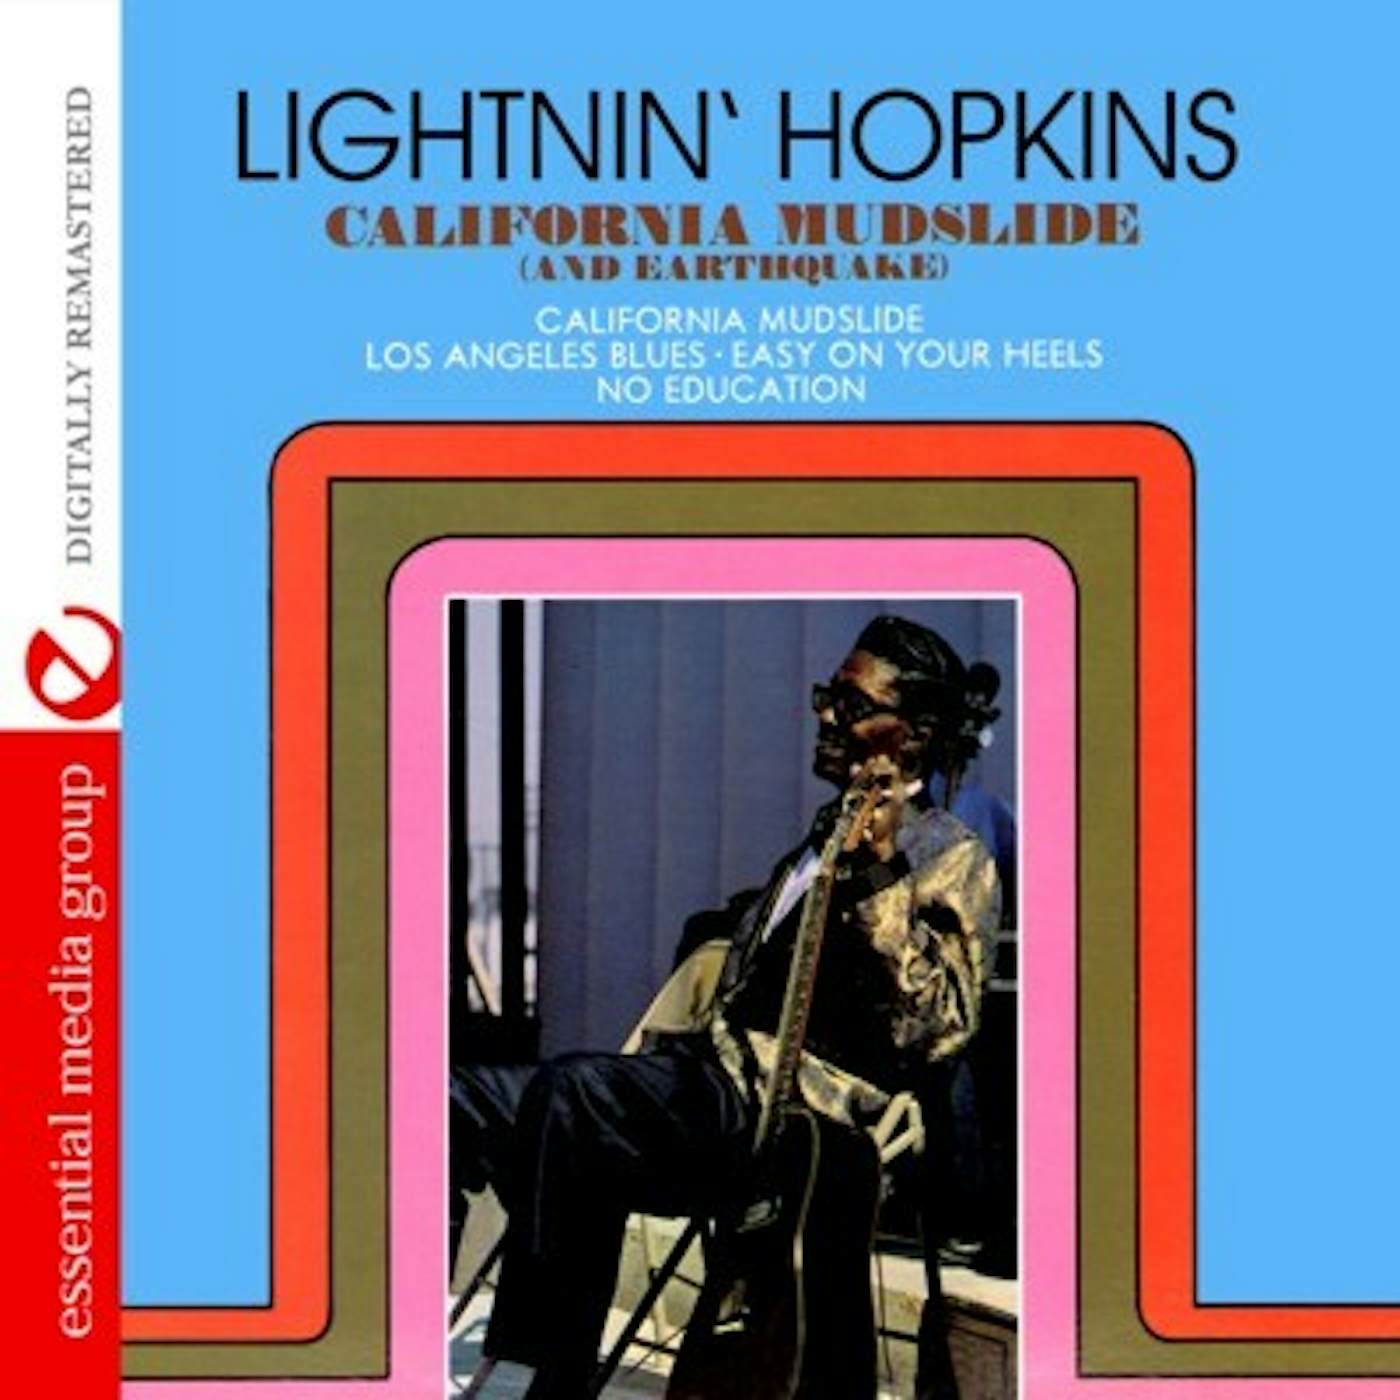 Lightnin' Hopkins CALIFORNIA MUDSLIDE & EARTHQUAKE CD